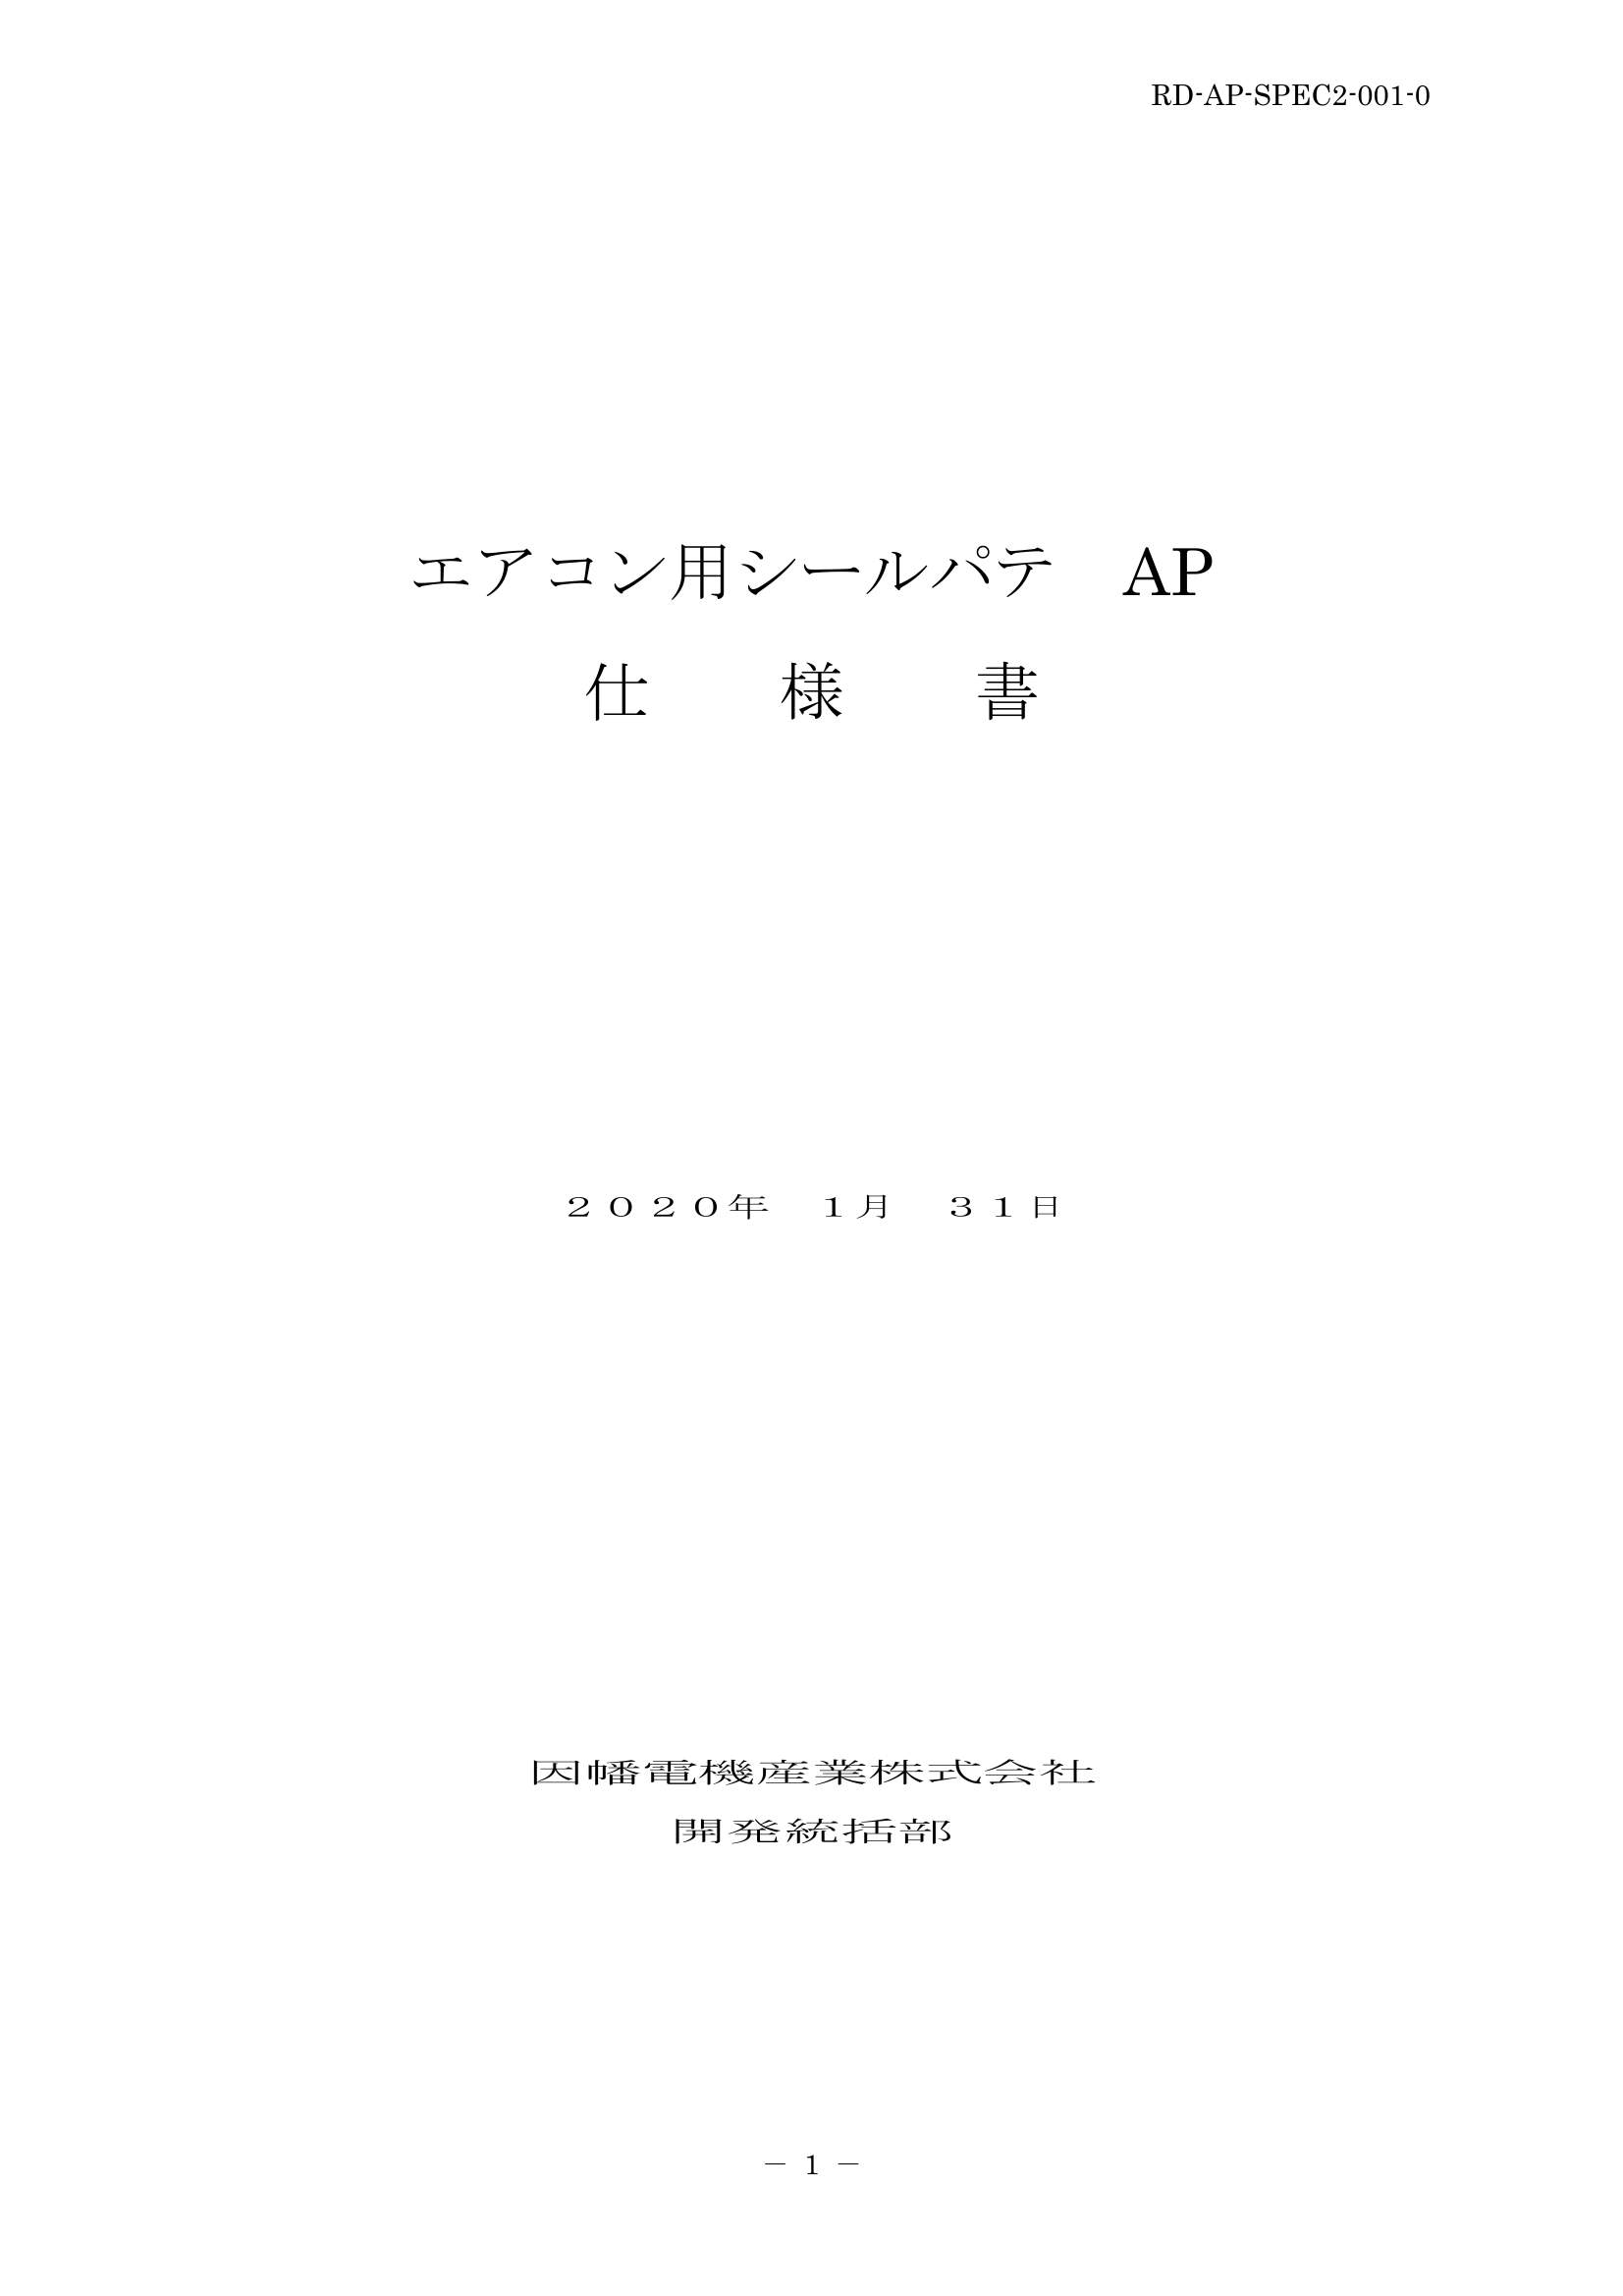 AP_仕様書_20200131.pdf